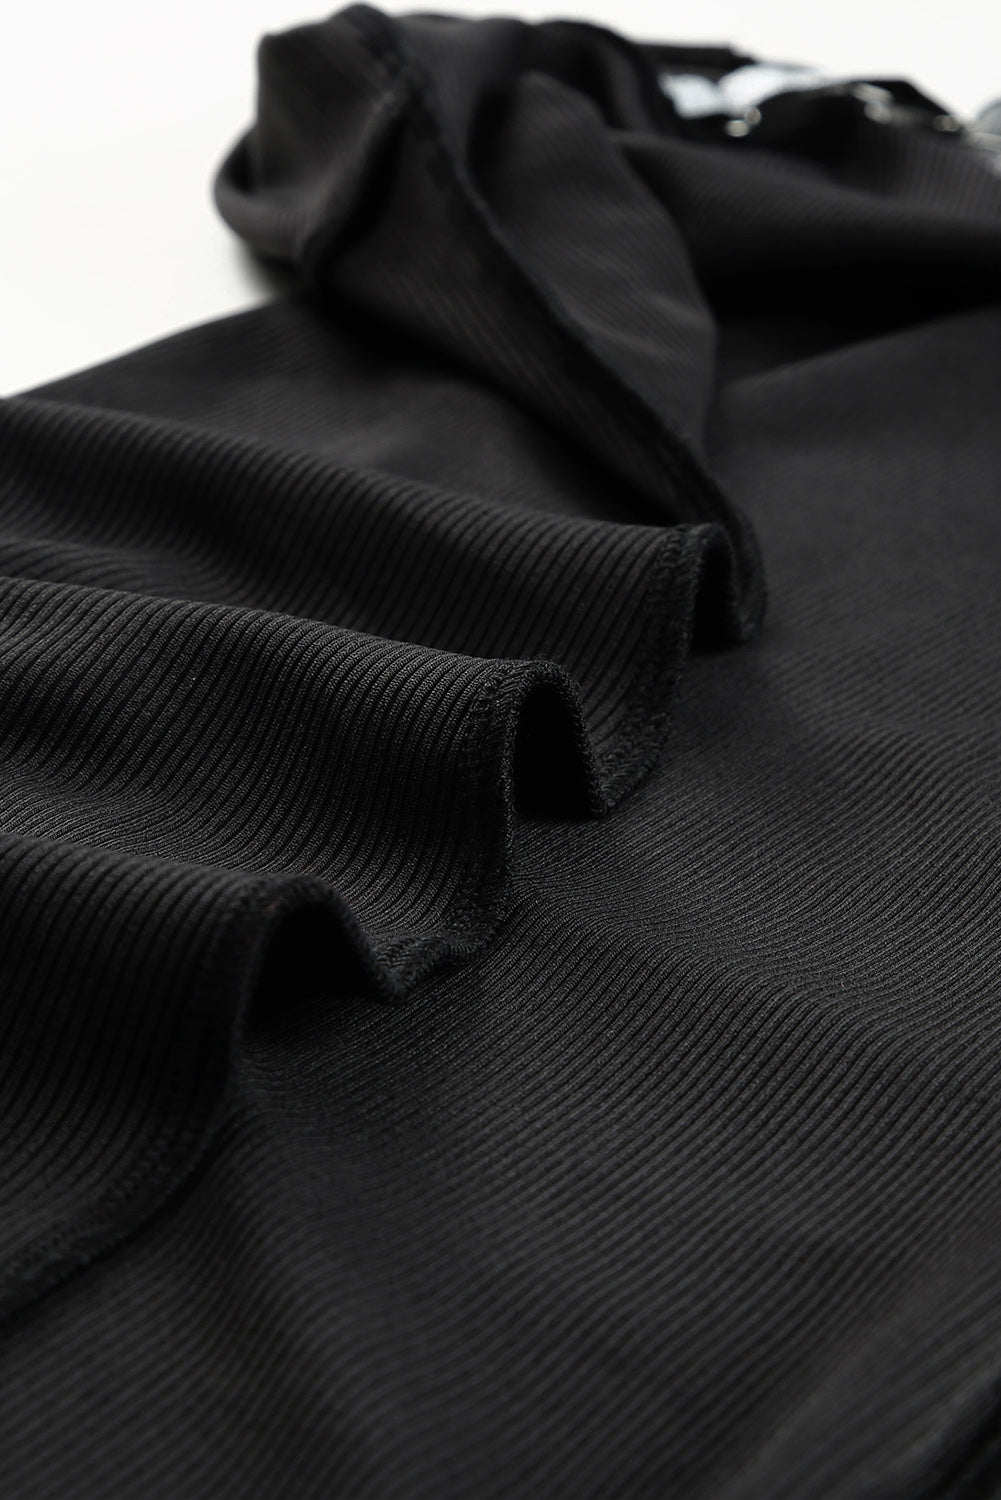 Black Strappy Rhinestone Tassel Mini Dress